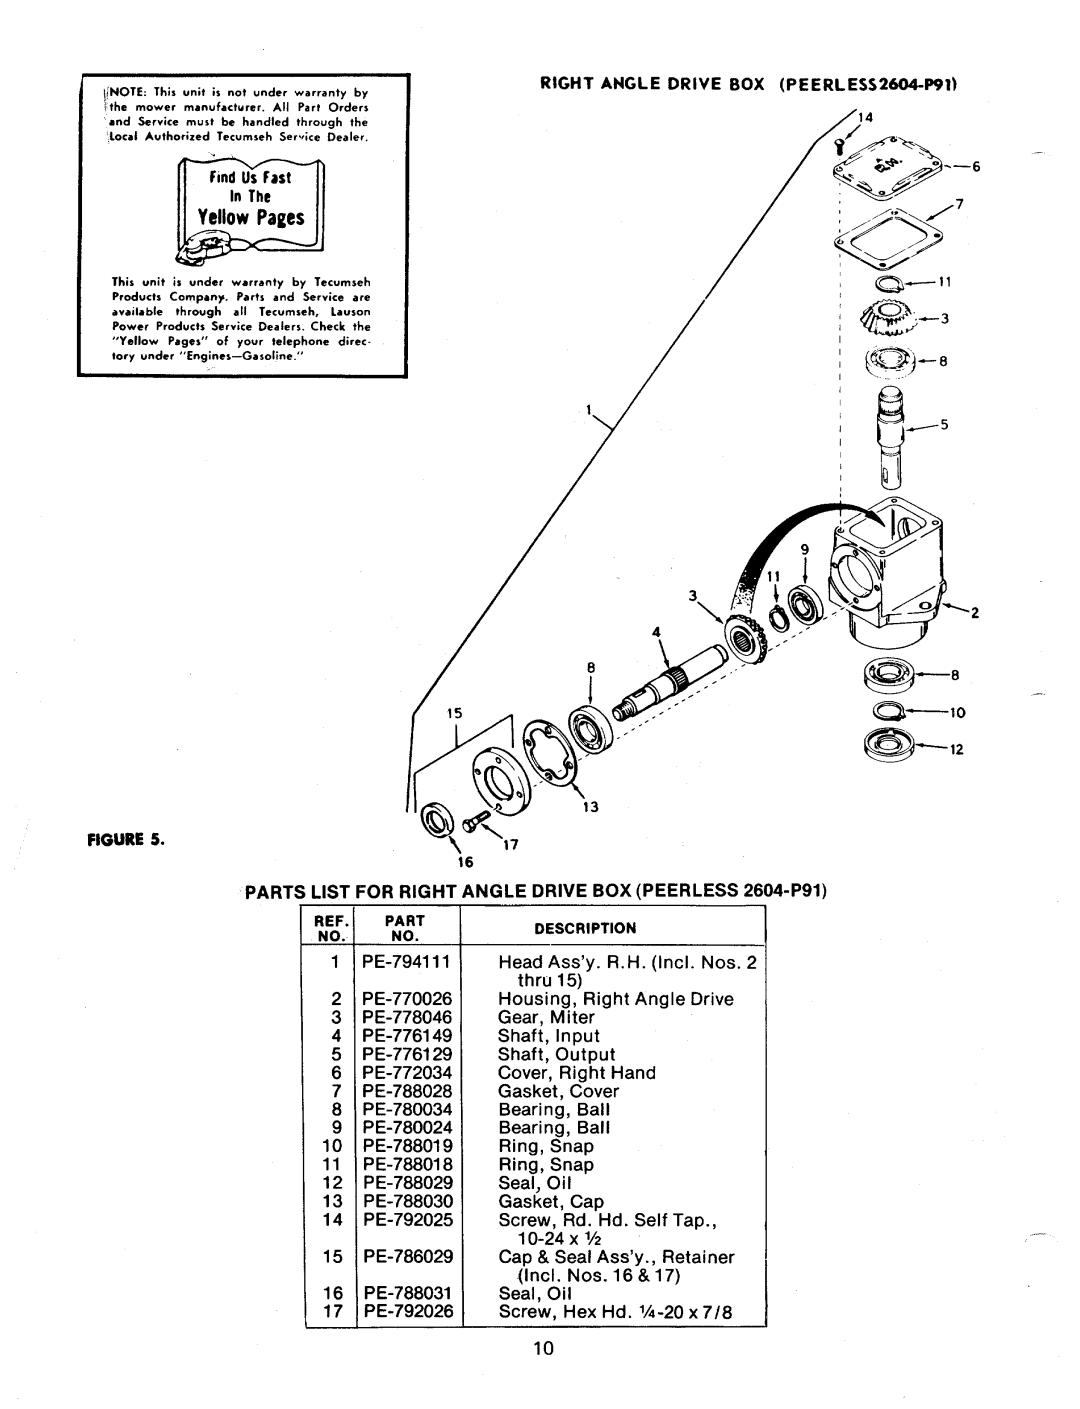 Bolens 198-992A manual 